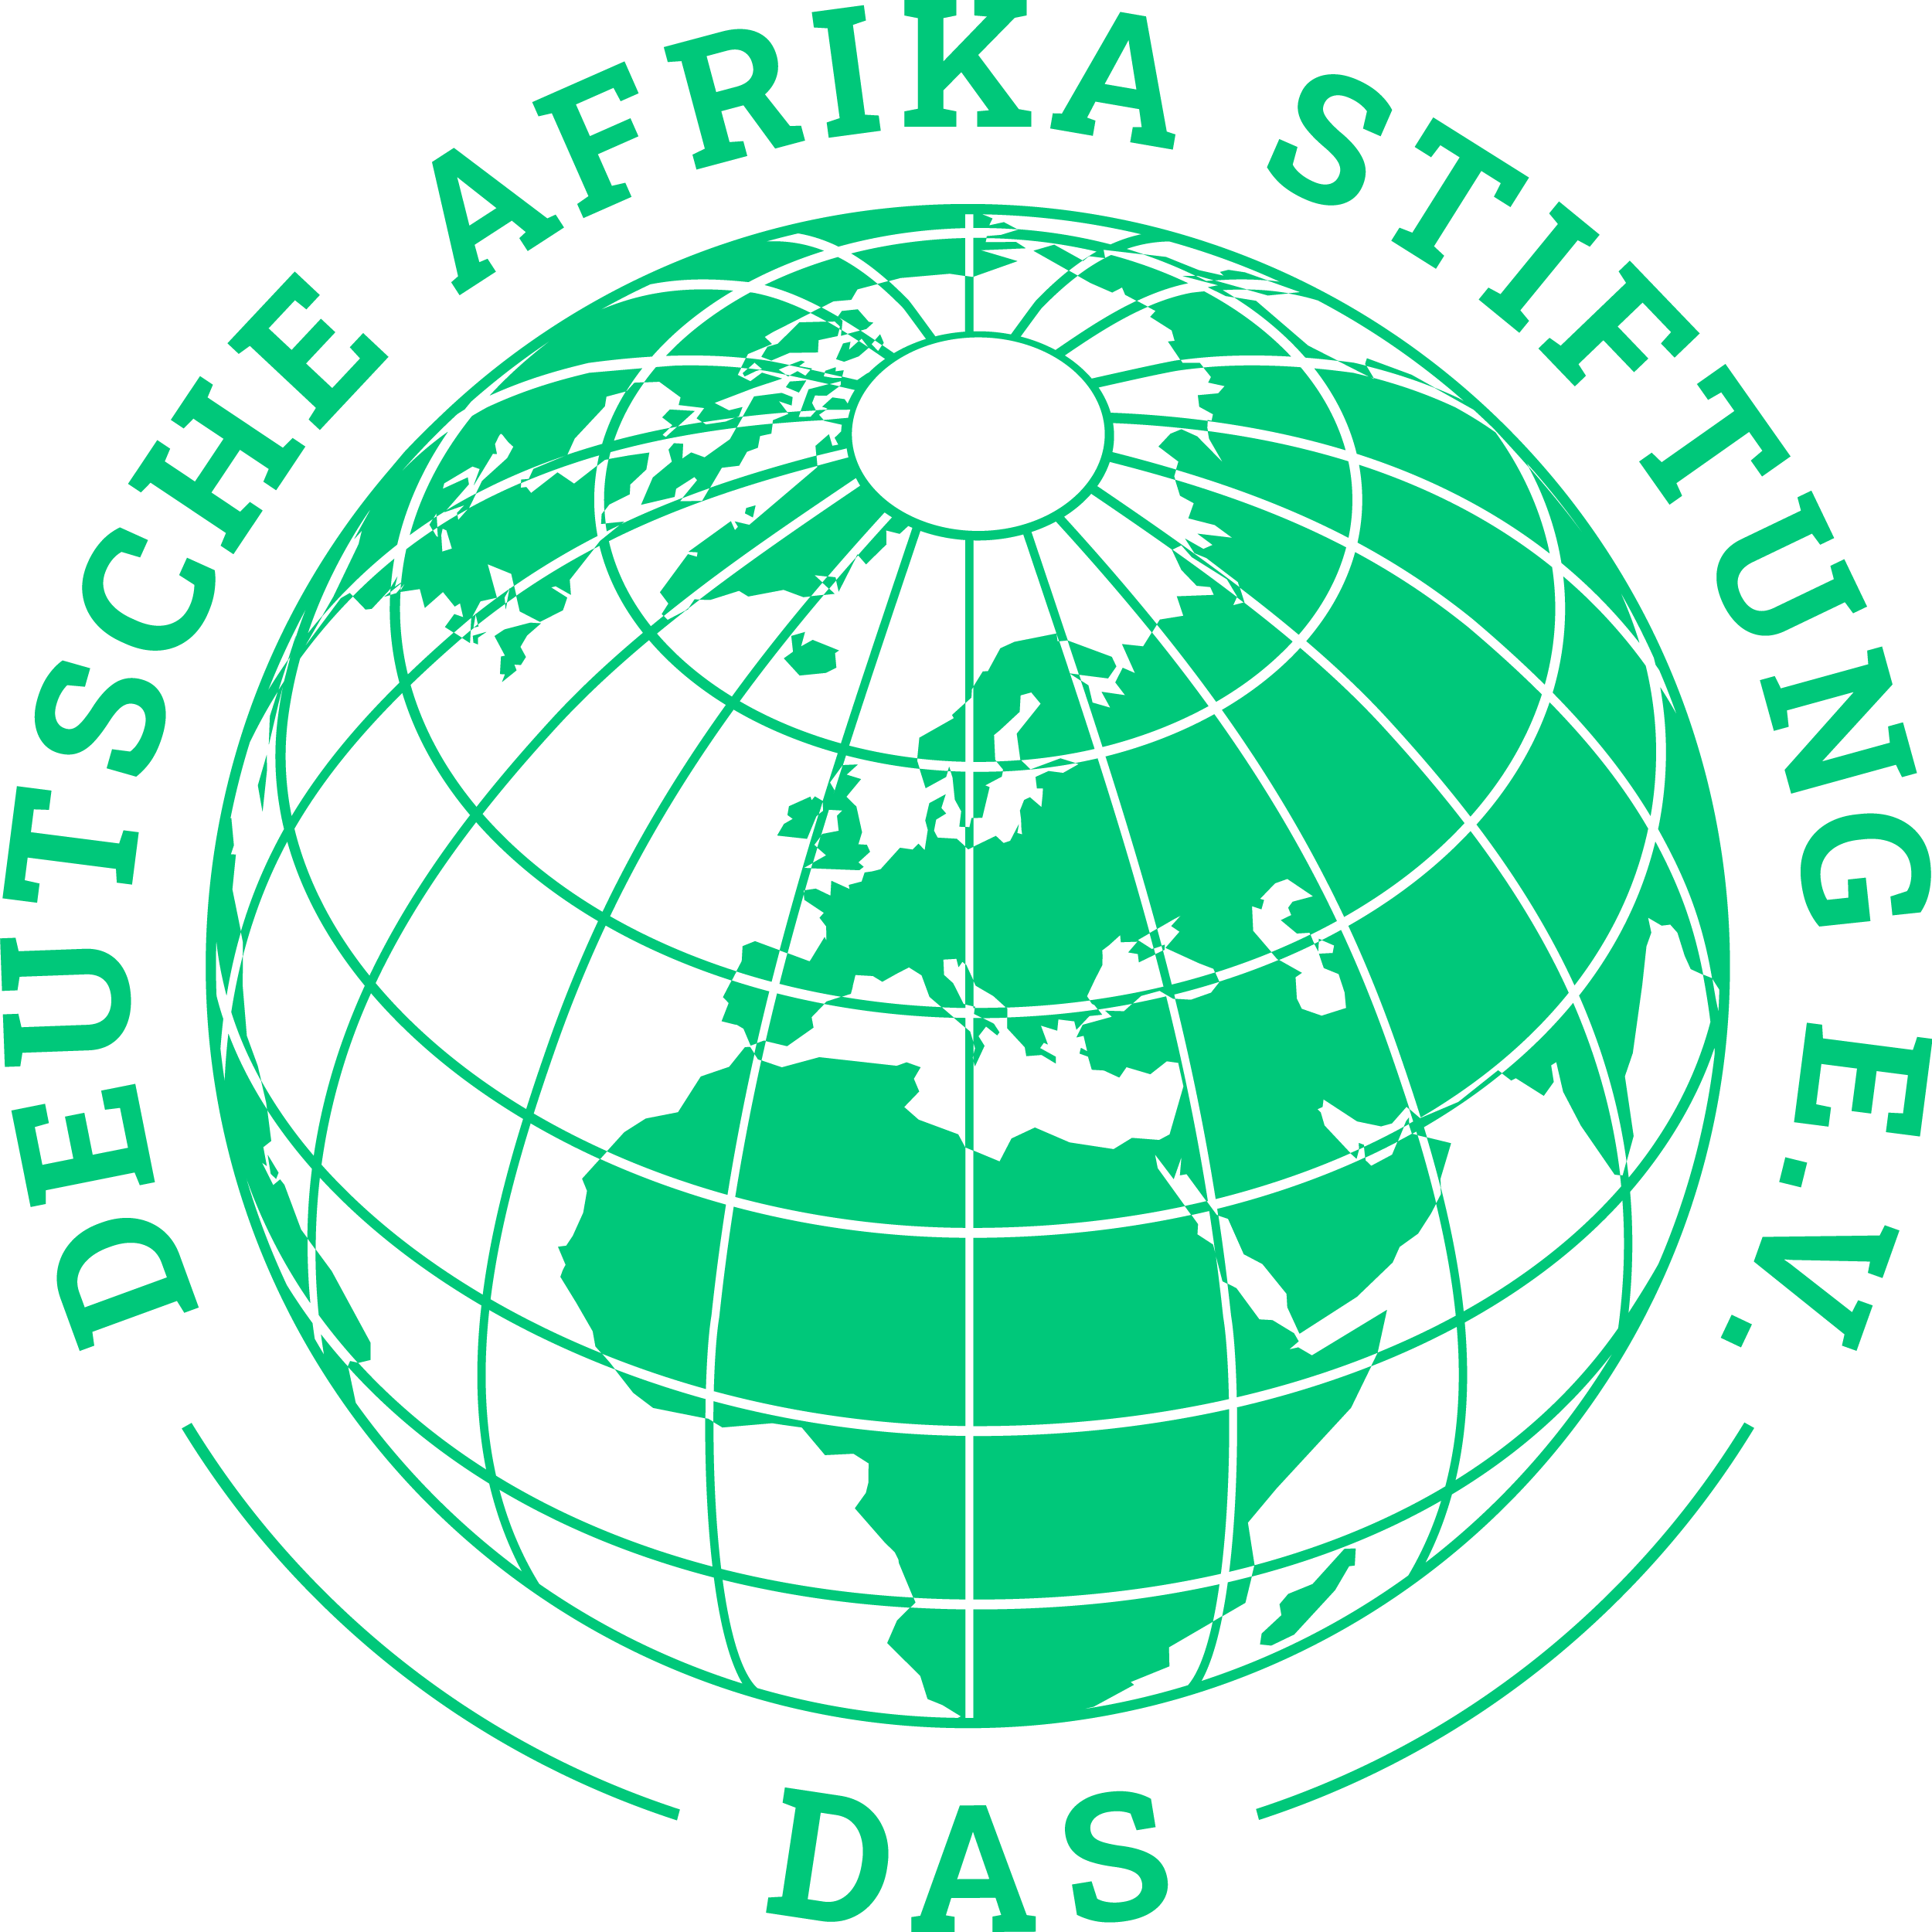 Deutsche Afrika Stiftung